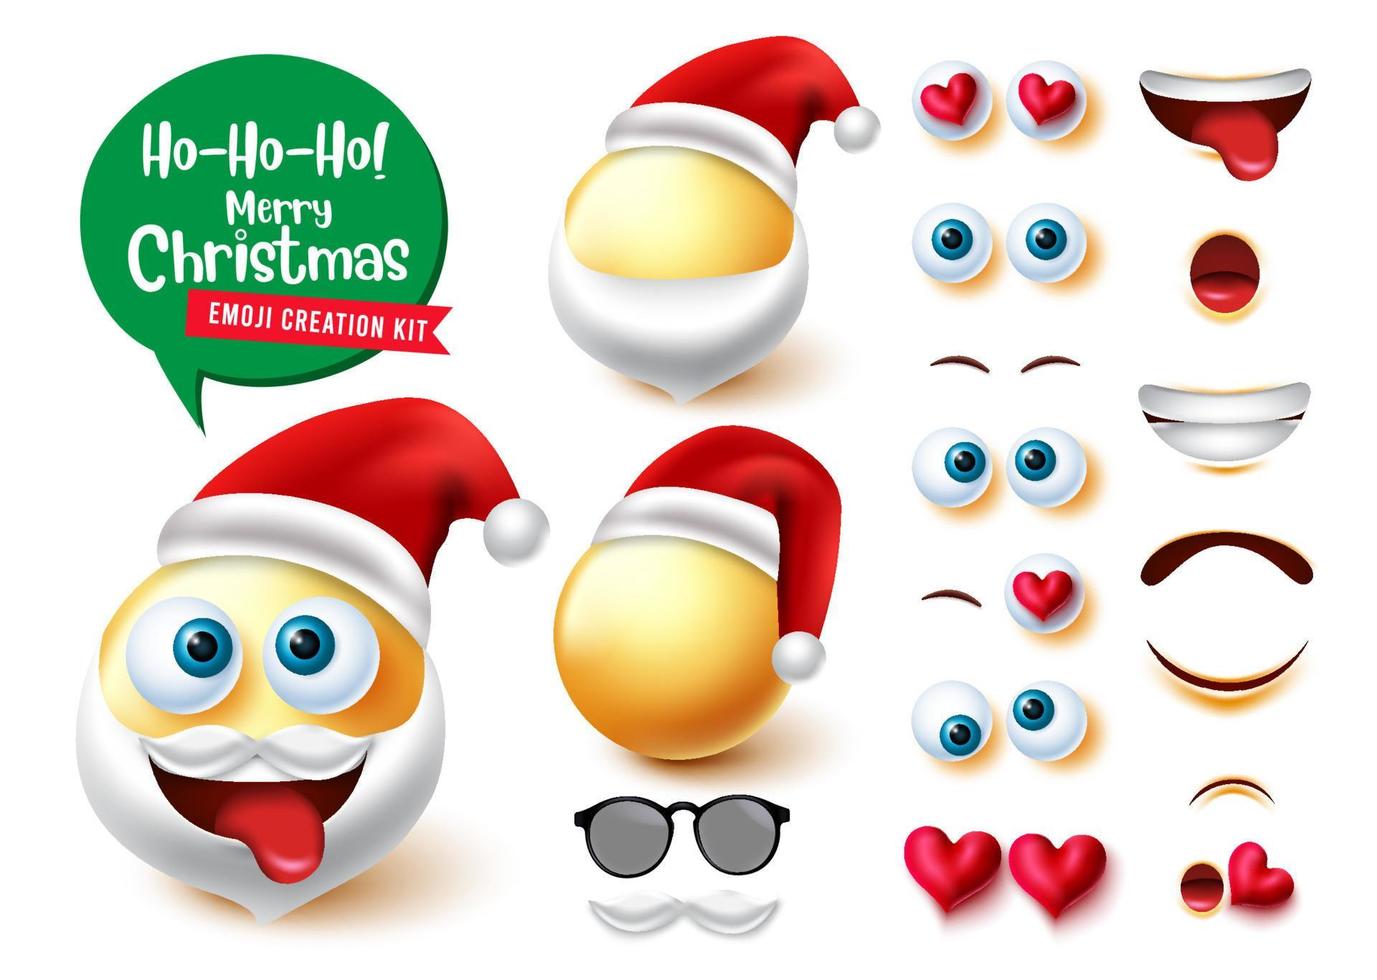 emojis Kerstman Schepper vector set. 3D-set met kerstpersonages met schattig, gek en grappig bewerkbaar emoji-kerstkarakter voor collectieontwerp voor het maken van gezichtsuitdrukkingen. vectorillustratie.